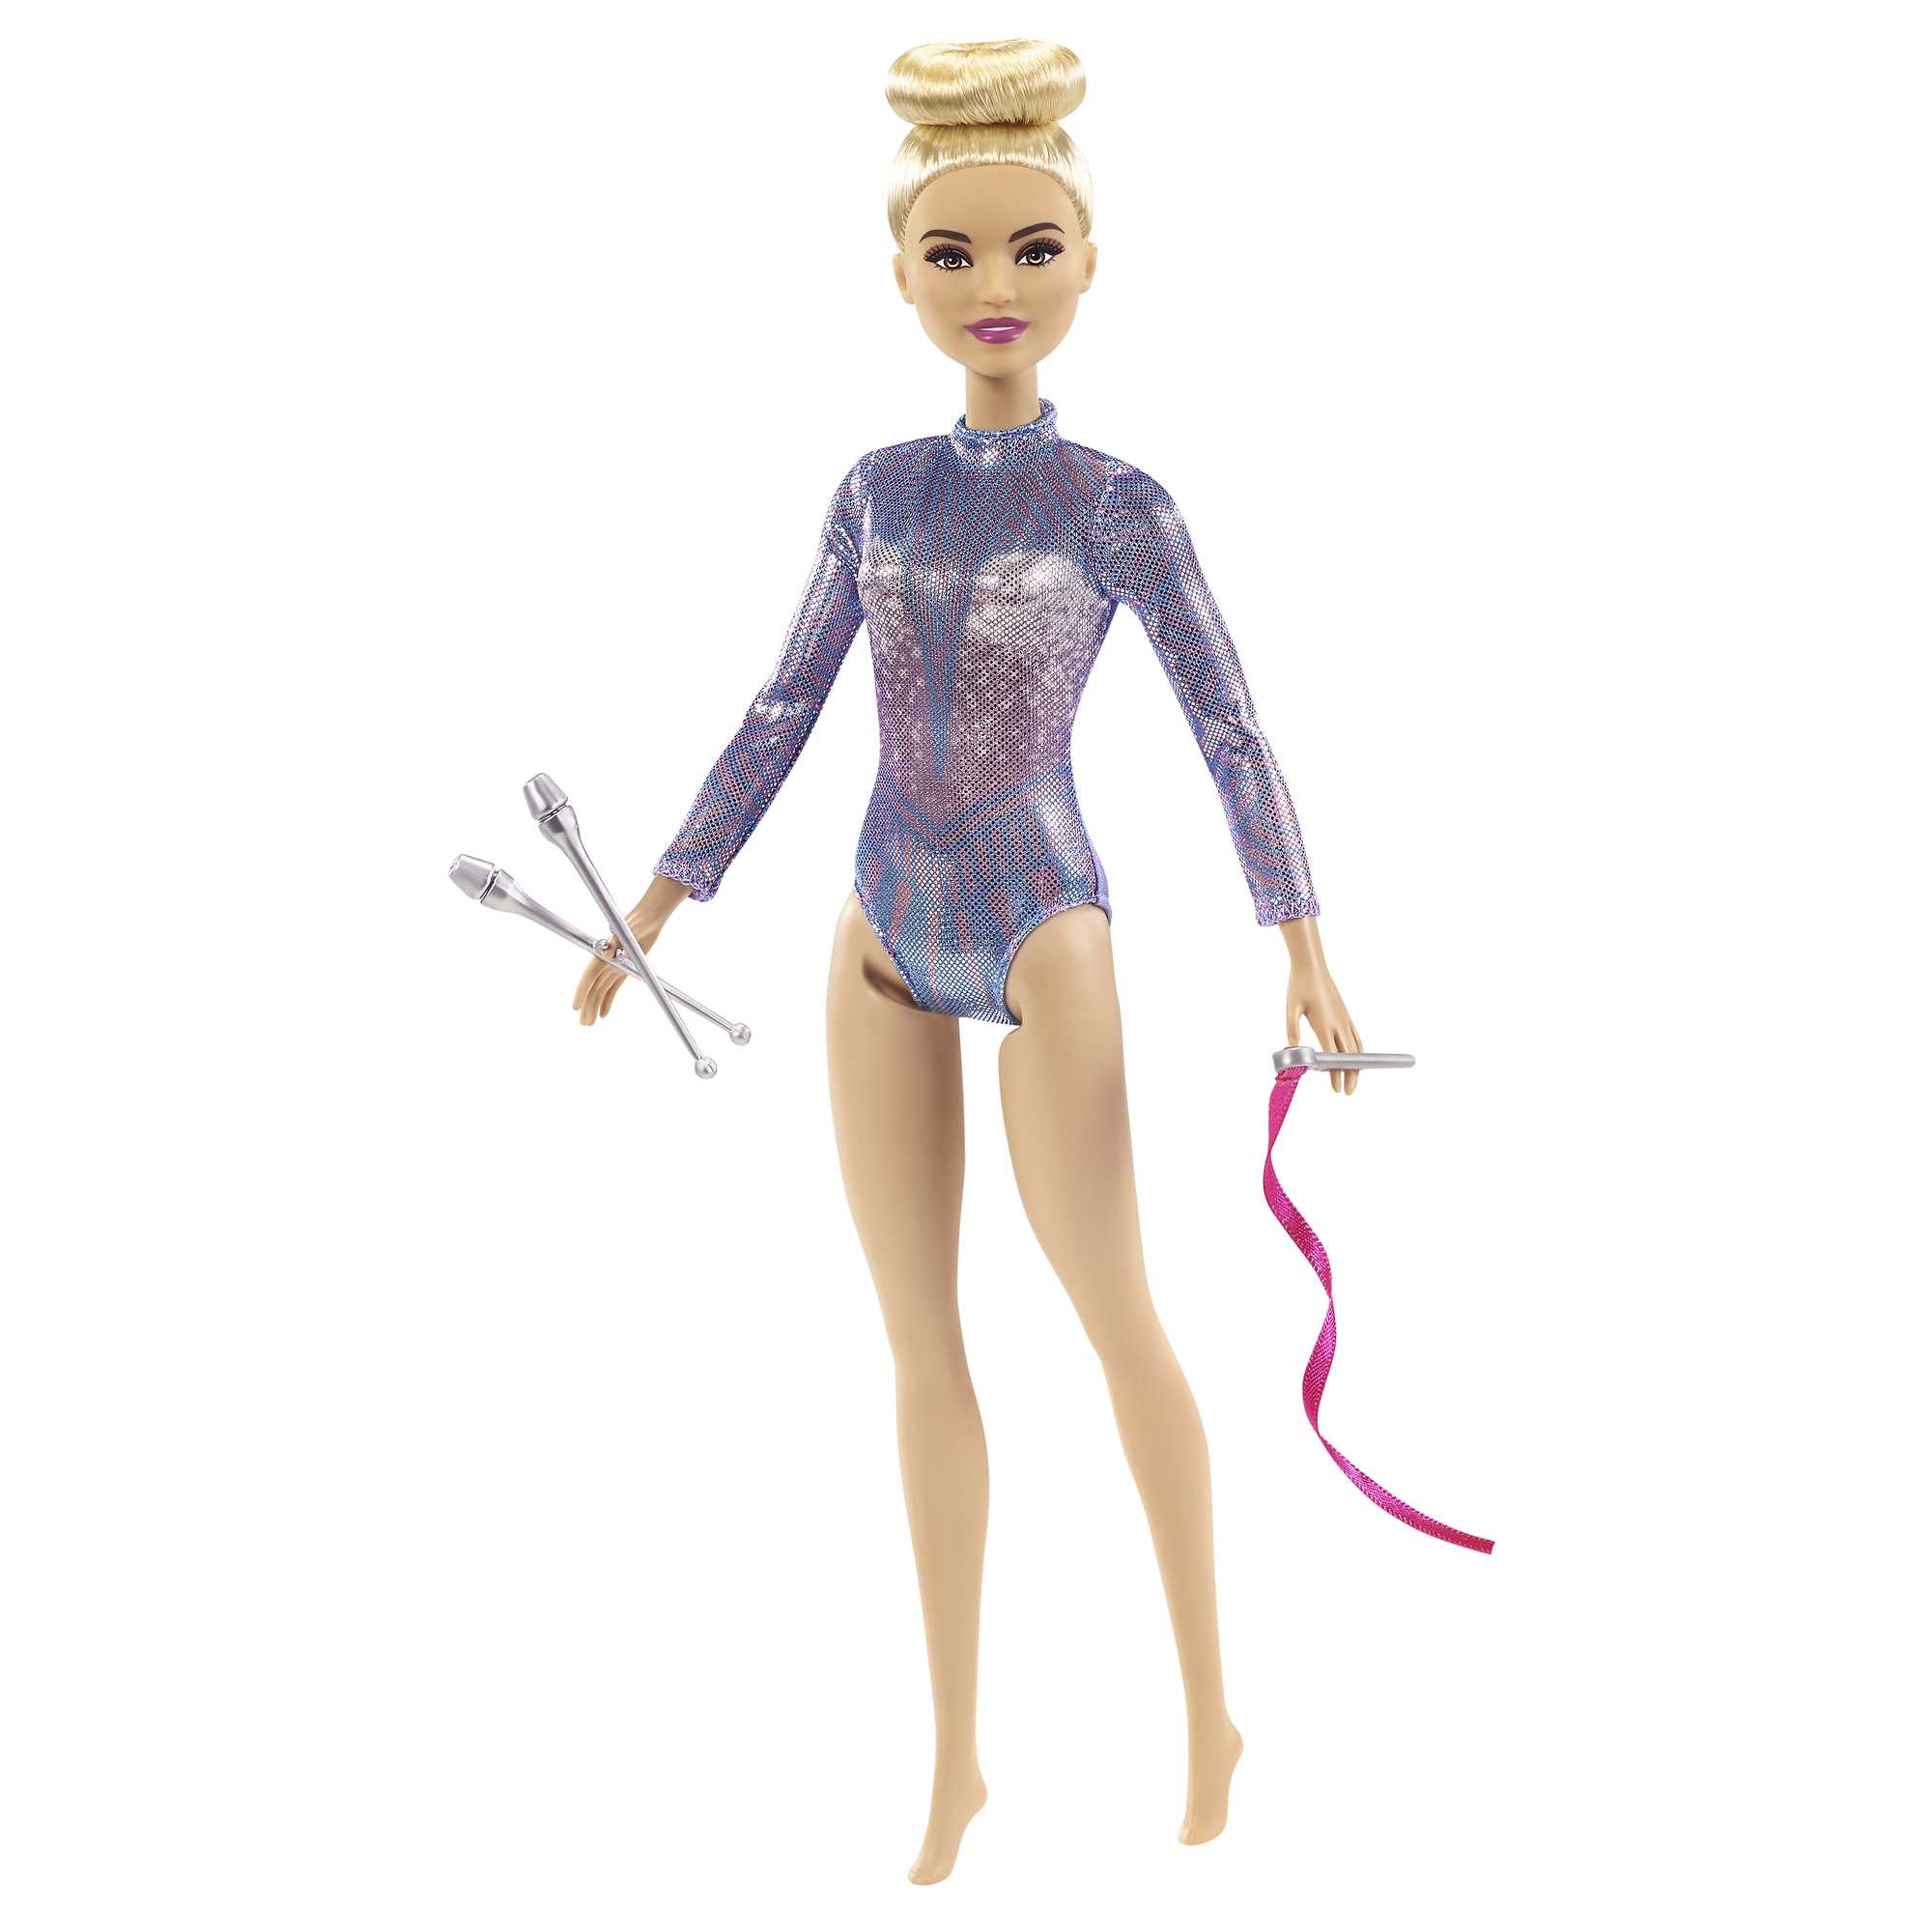 Кукла Barbie Кем быть? Гимнастка GTN65 barbie кукла кем быть national geographic исследователь